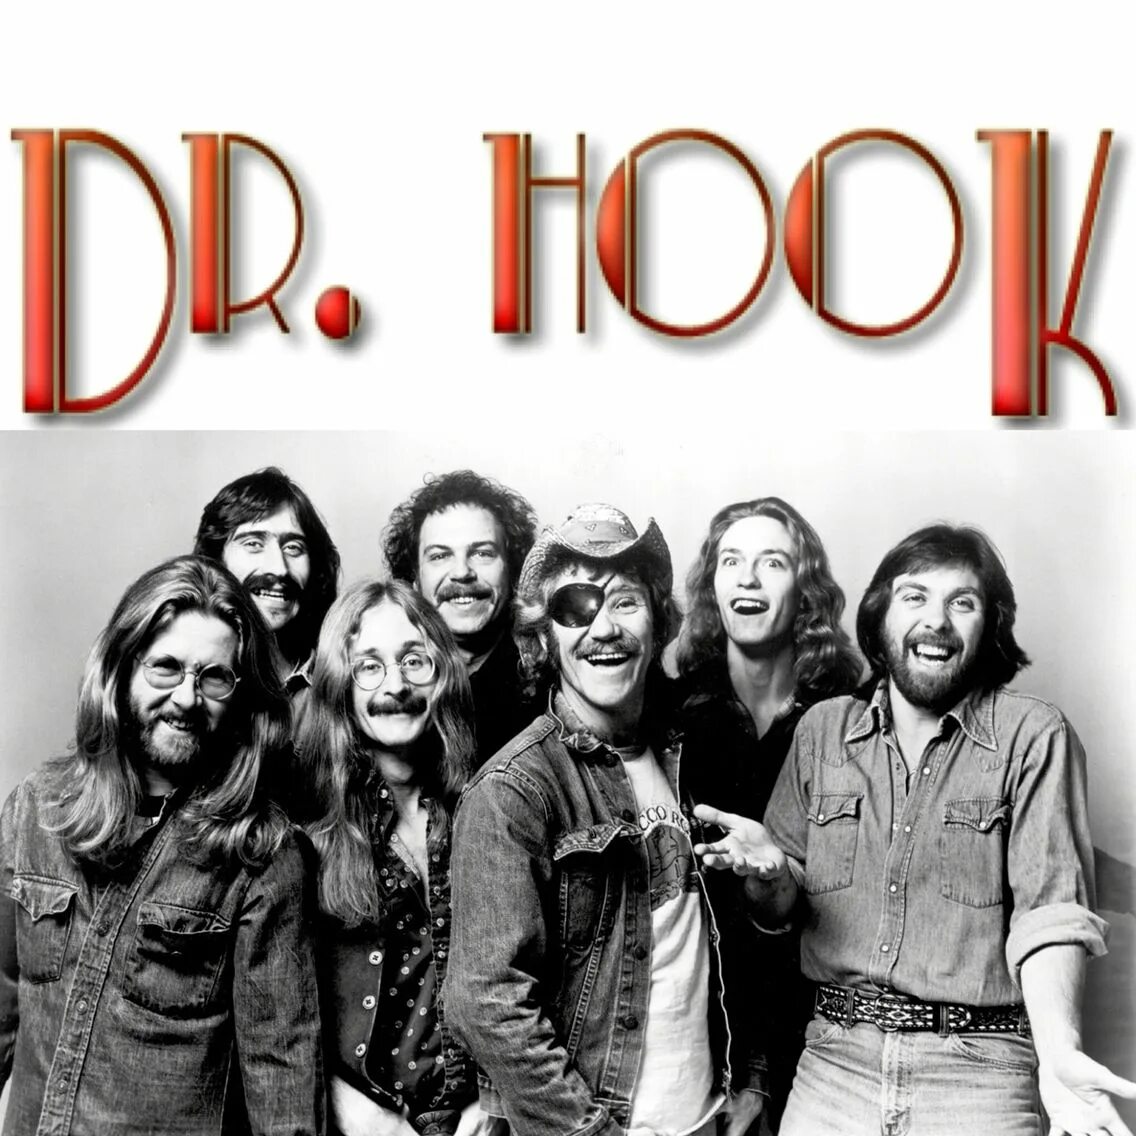 Dr. Hook. Dr. Hook CD. Dr Hook albums. Группа Dr. Hook & the Medicine show альбомы.